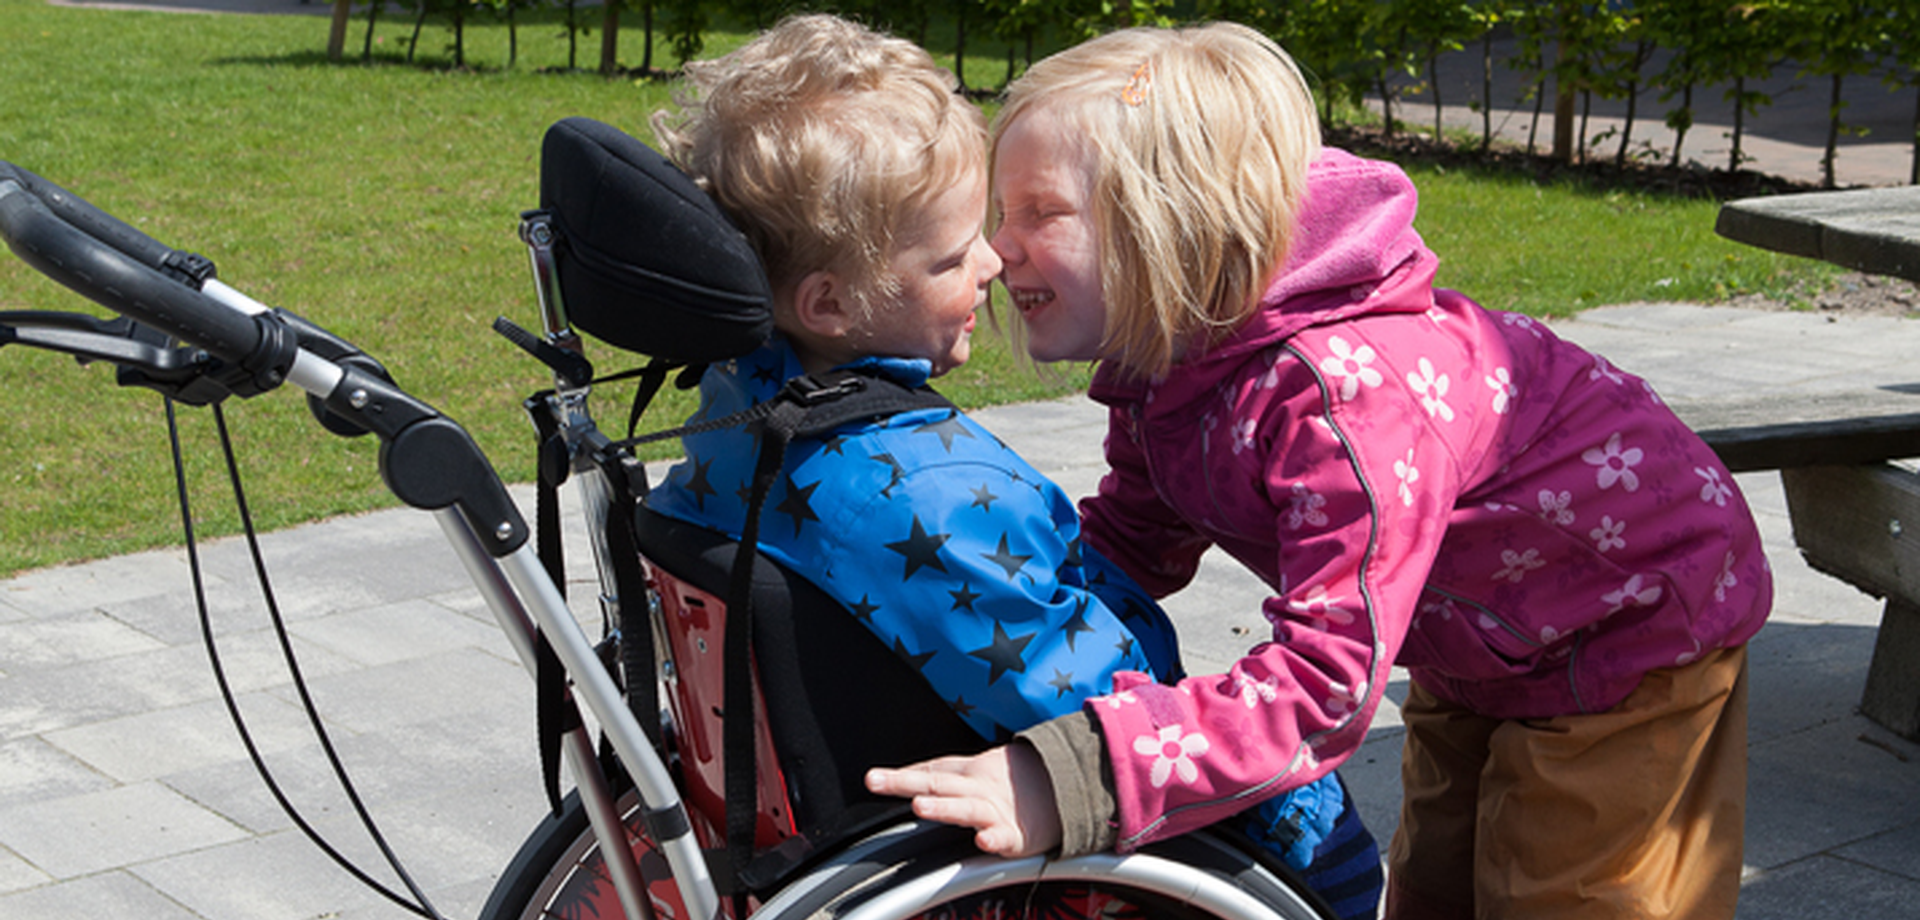 Das Bild zeigt zwei Kinder, davon eines im Rollstuhl. Foto: Kleinert / GfG